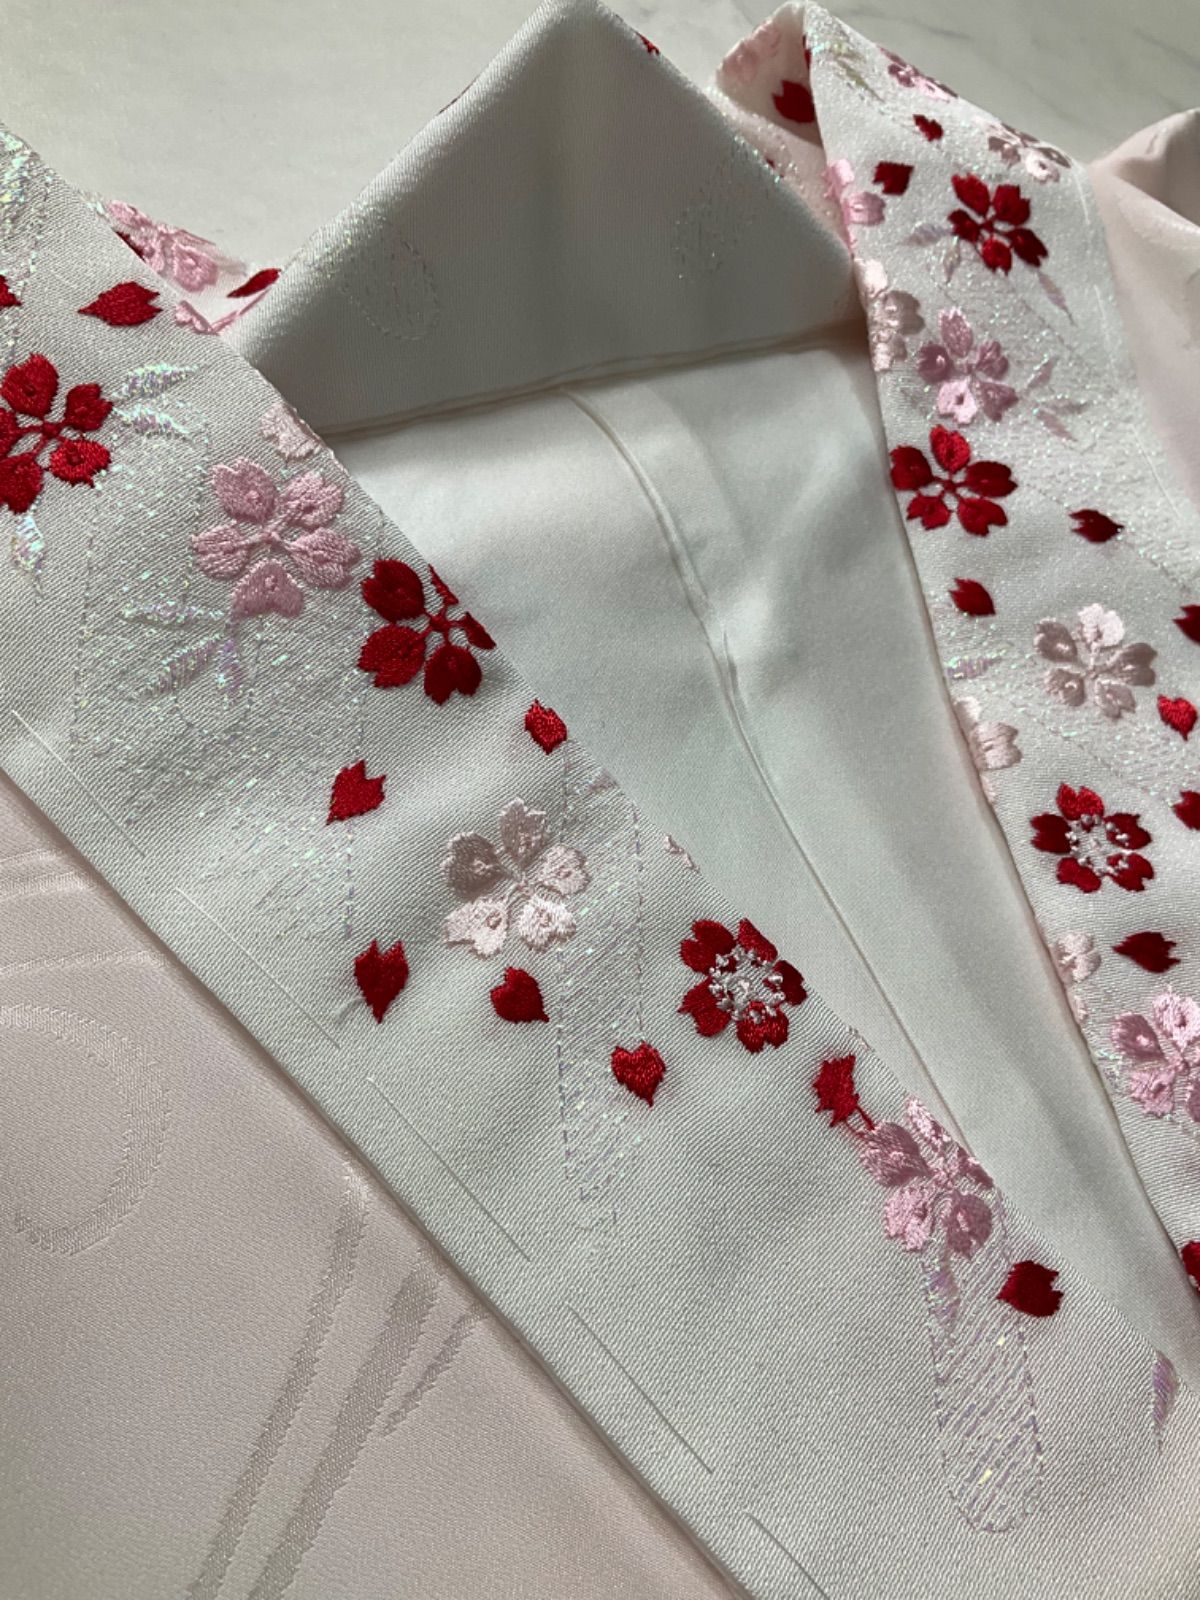 長襦袢 振袖用 艶やか赤にぷっくり花模様の刺繍半襟付 正絹 - 通販